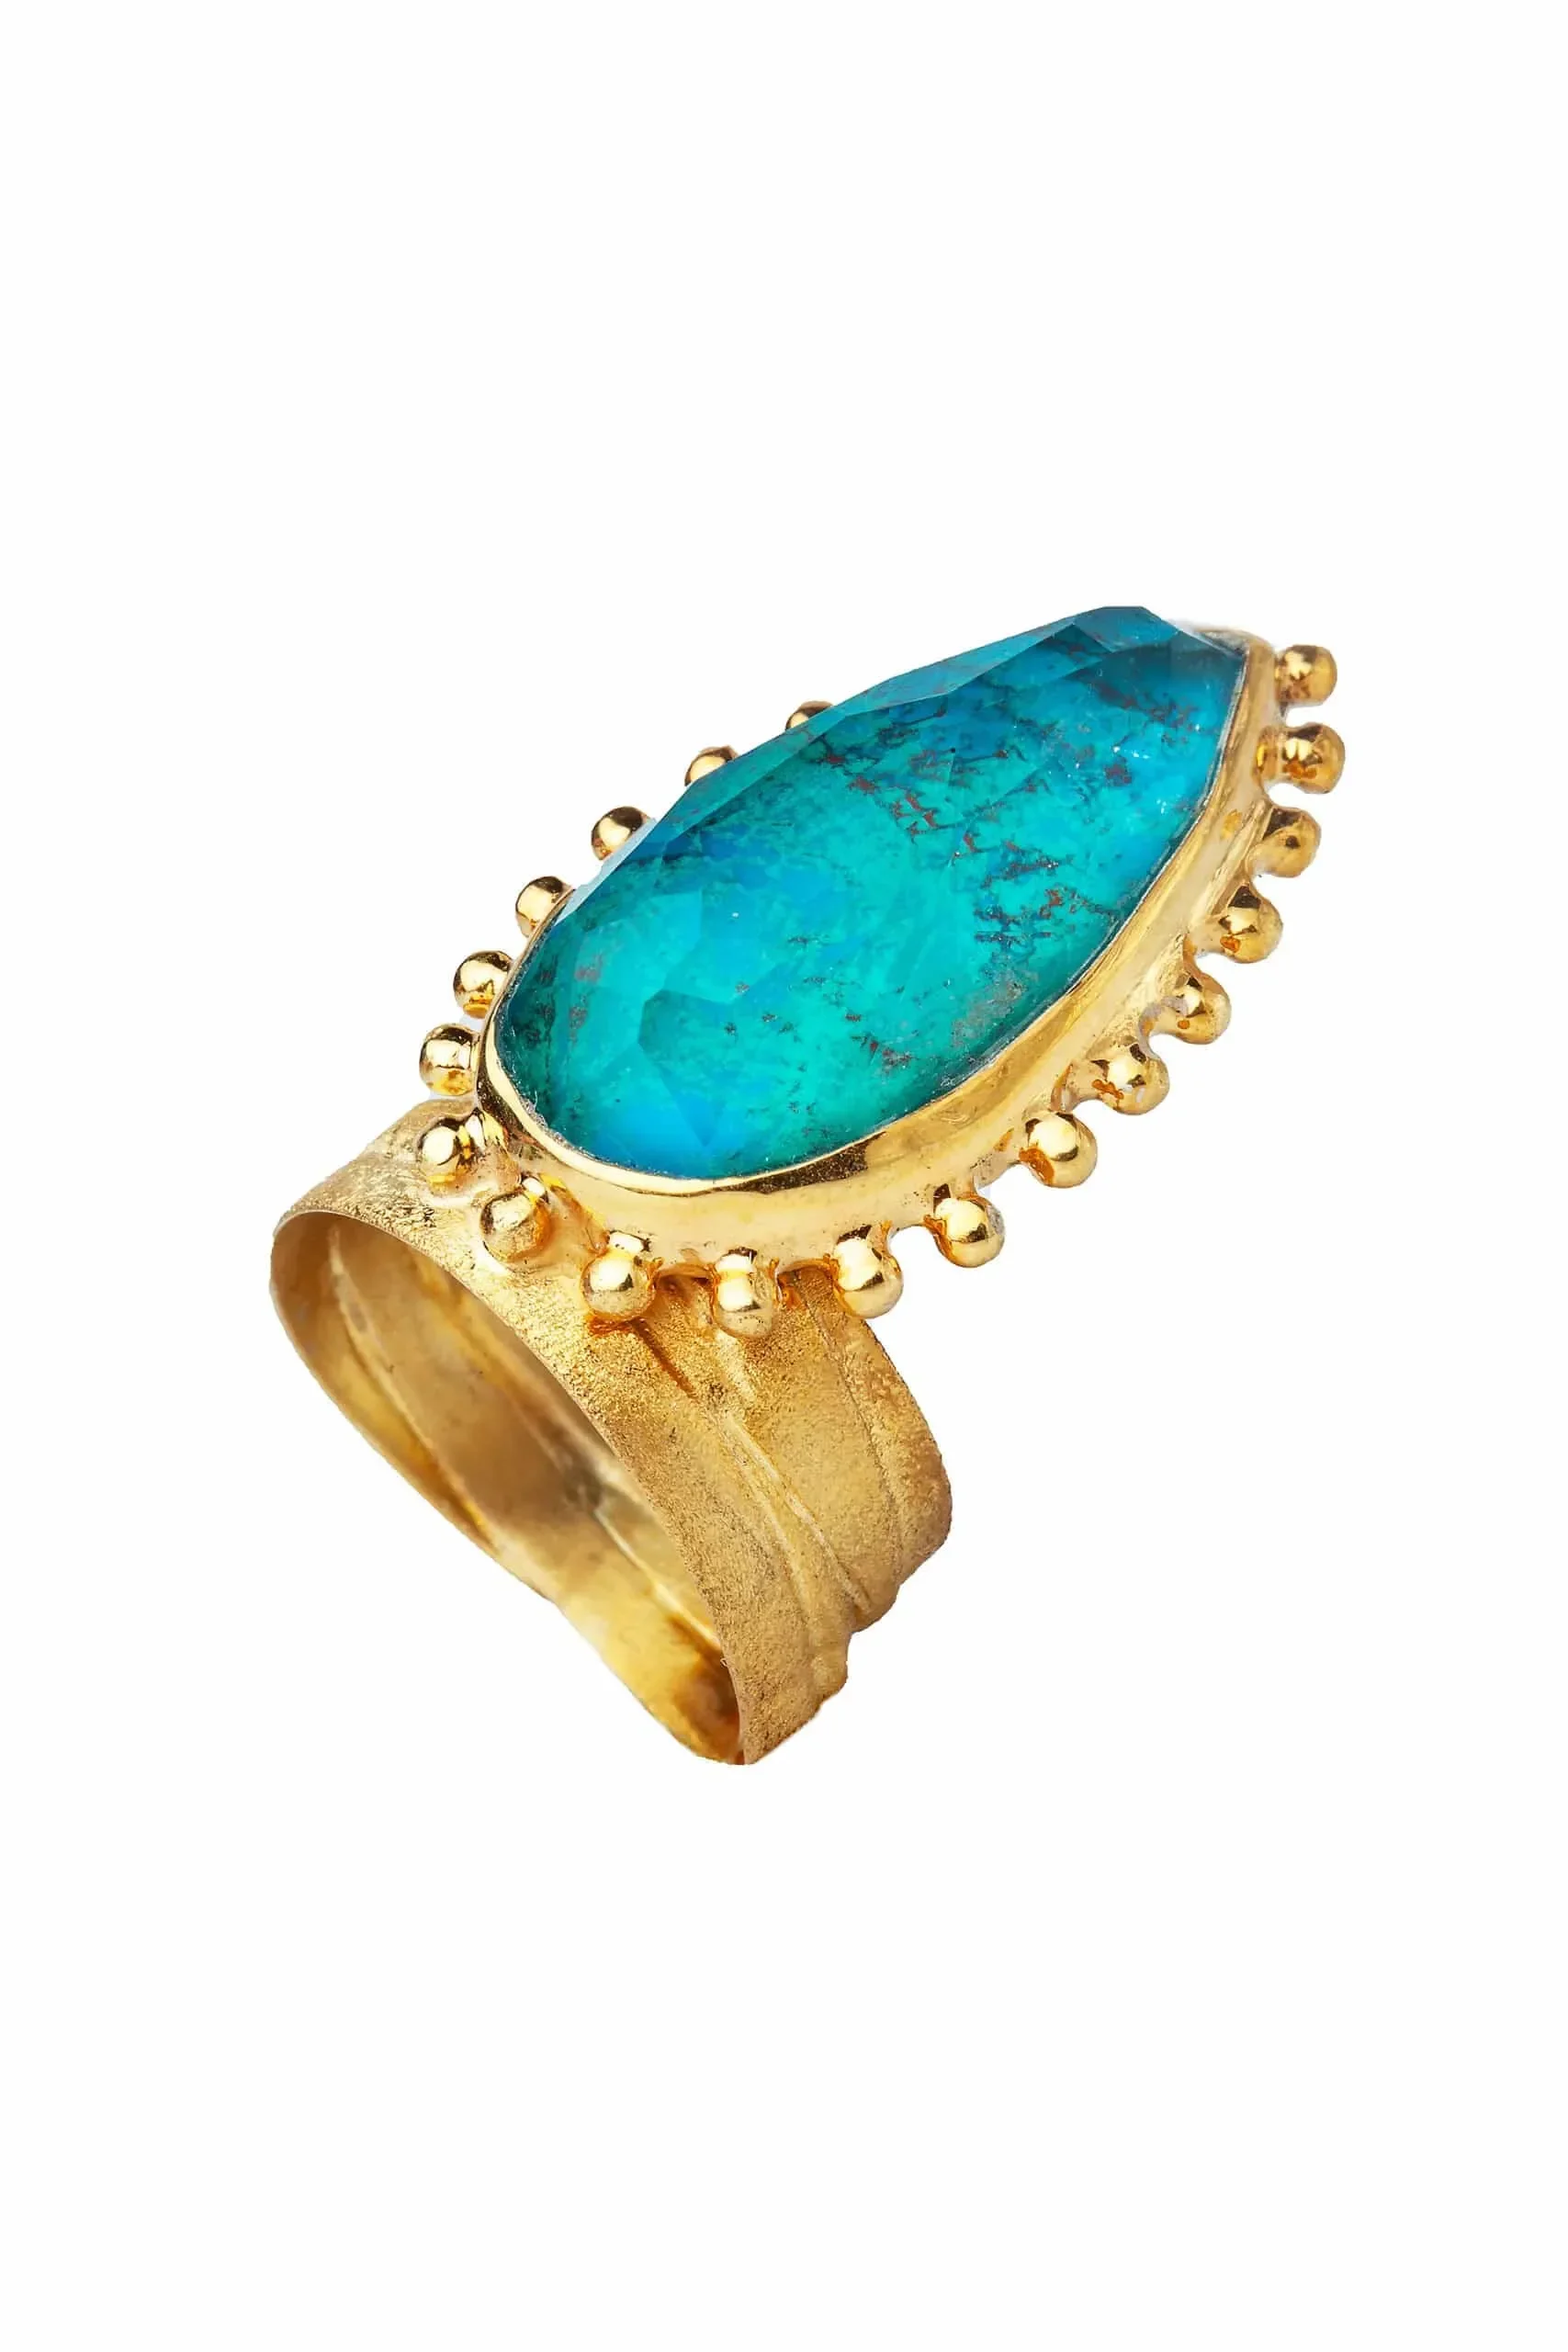 Χειροποίητα κοσμήματα | Ασημένιο επίχρυσο δαχτυλίδι με χρυσόκολλα gallery 1